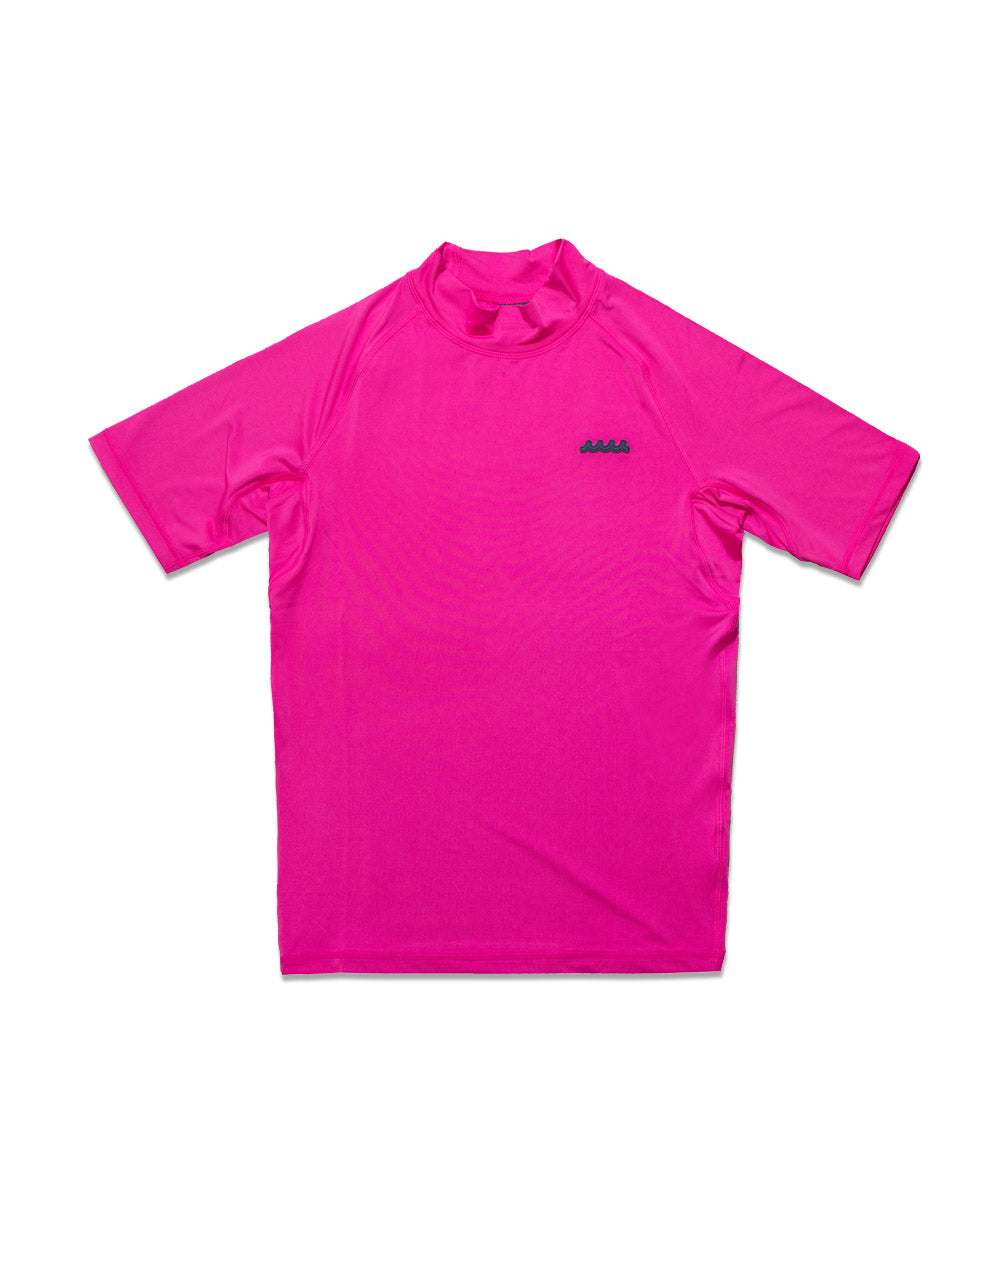 ムータマリンゴルフの蛍光ピンクのシャツスポーツ